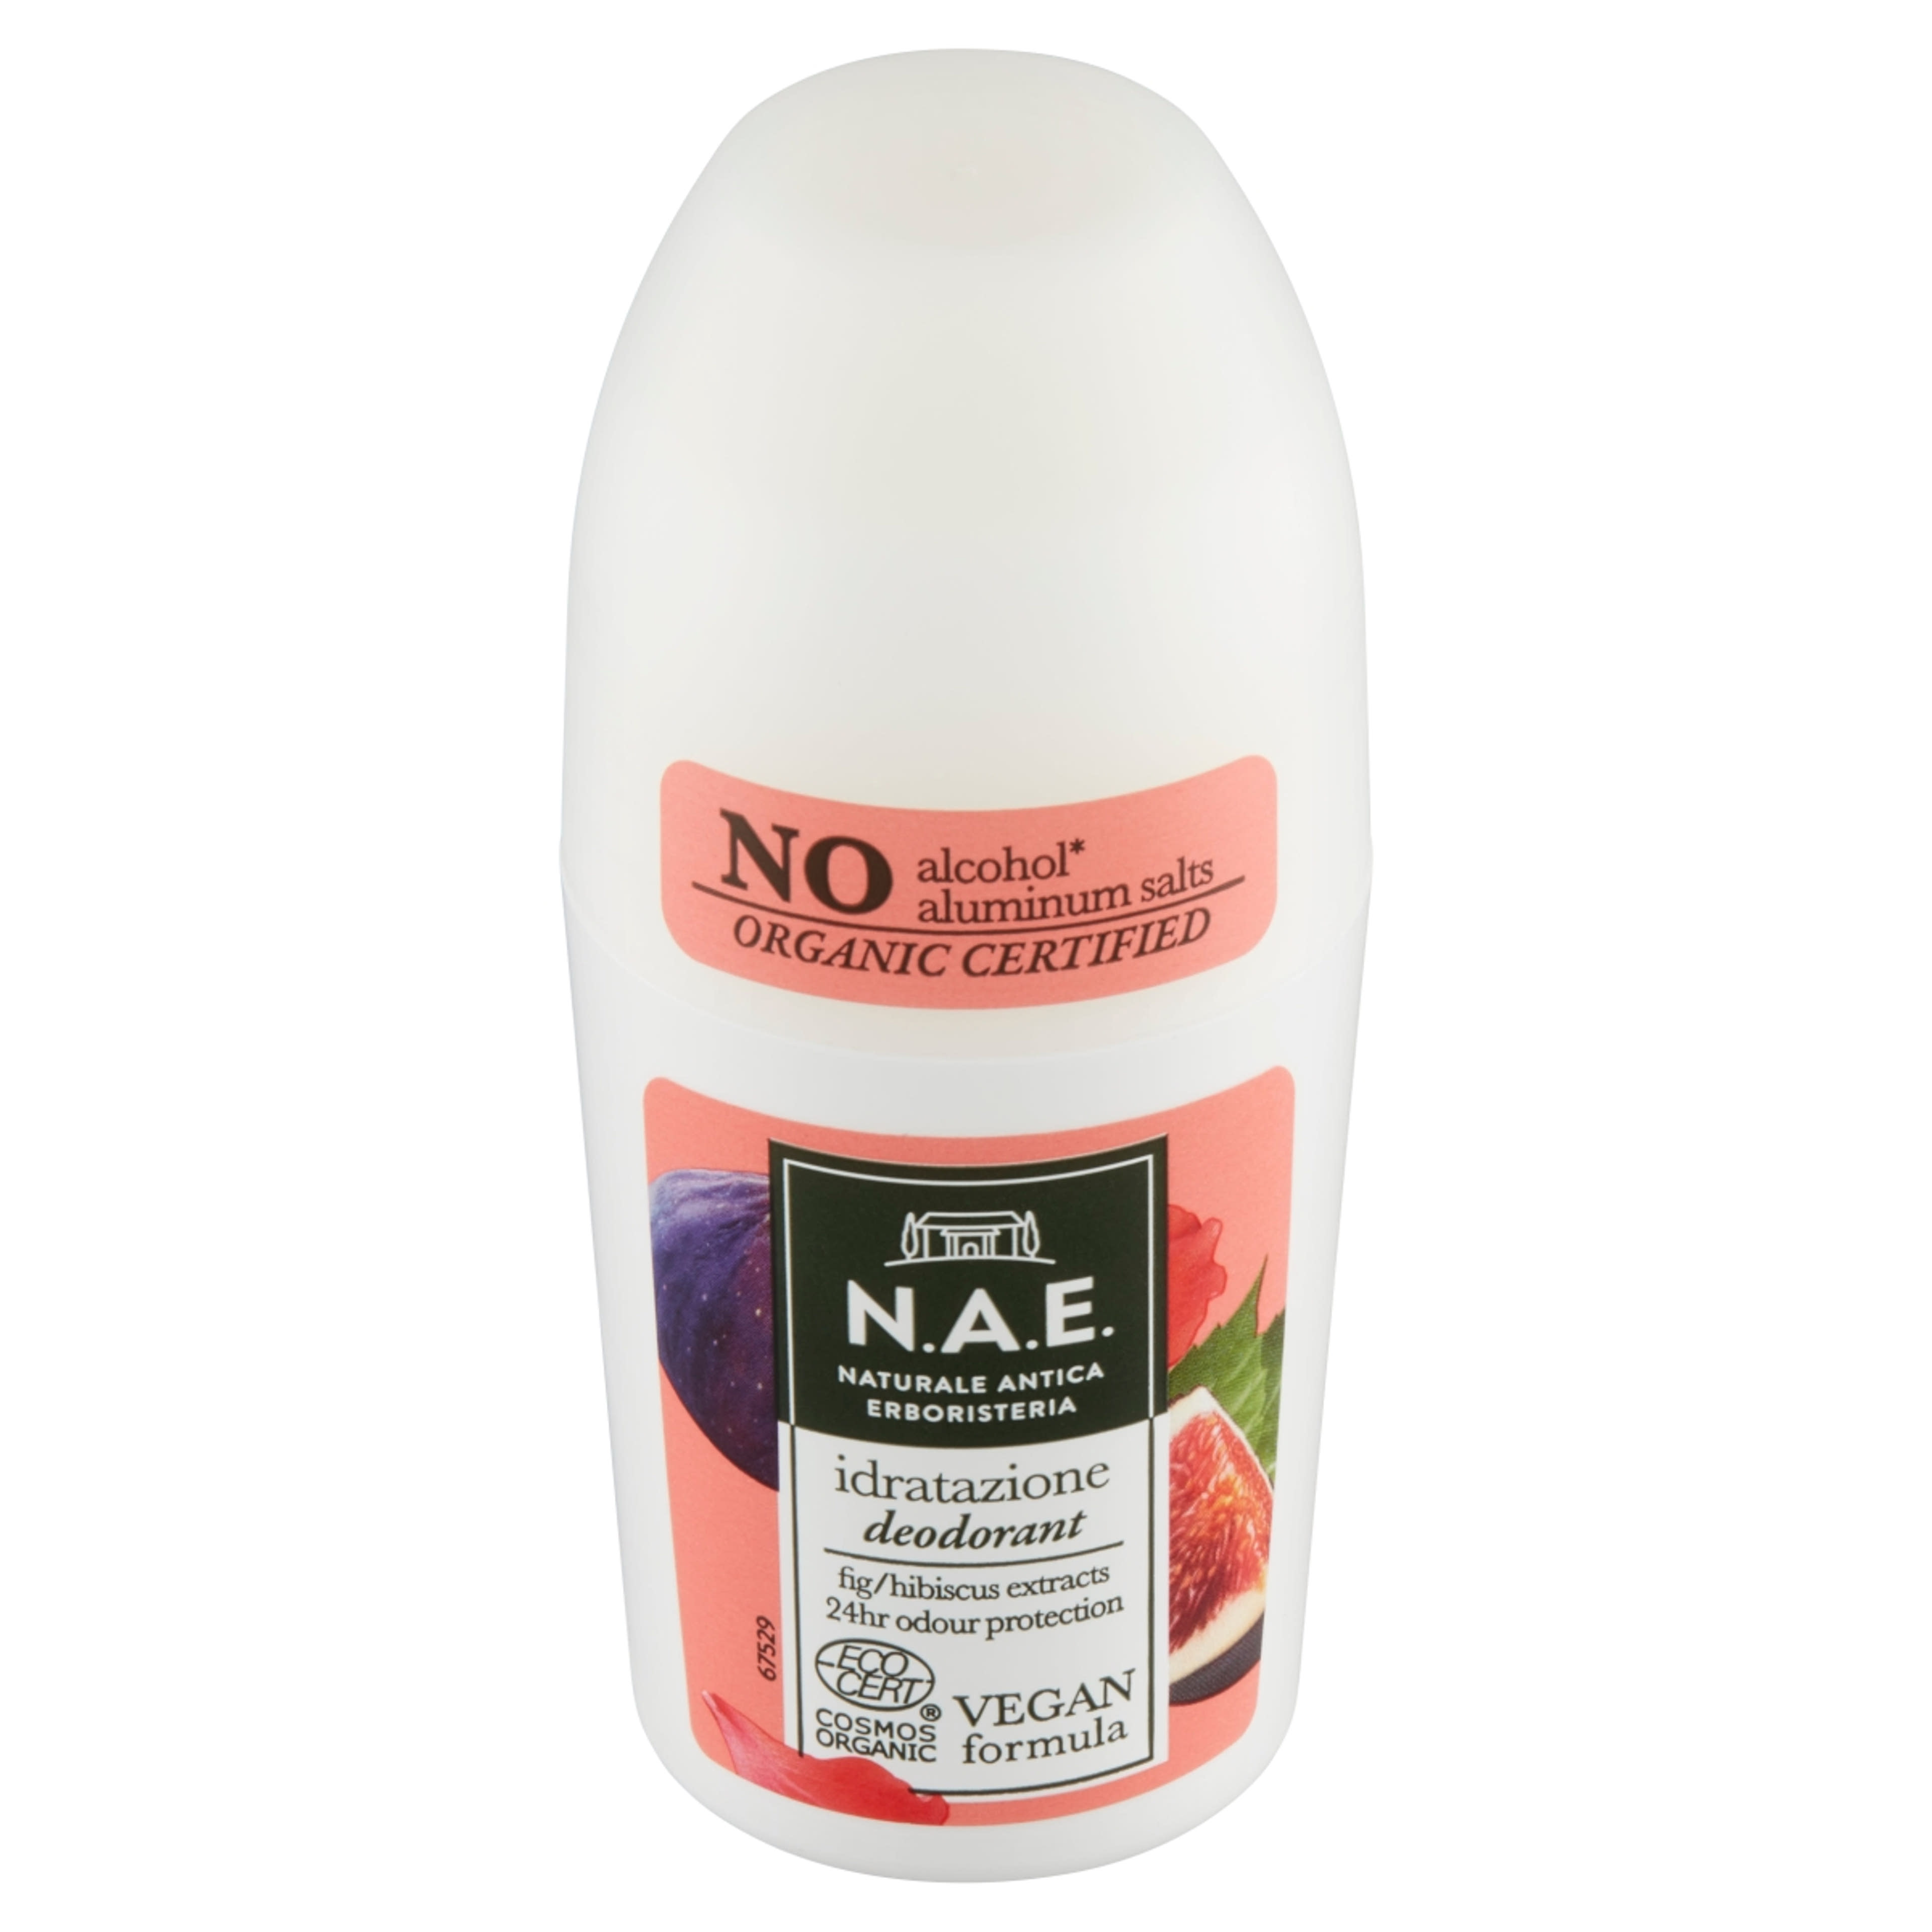 N.A.E. roll-on bio frissítő idratazione - 50 ml-2